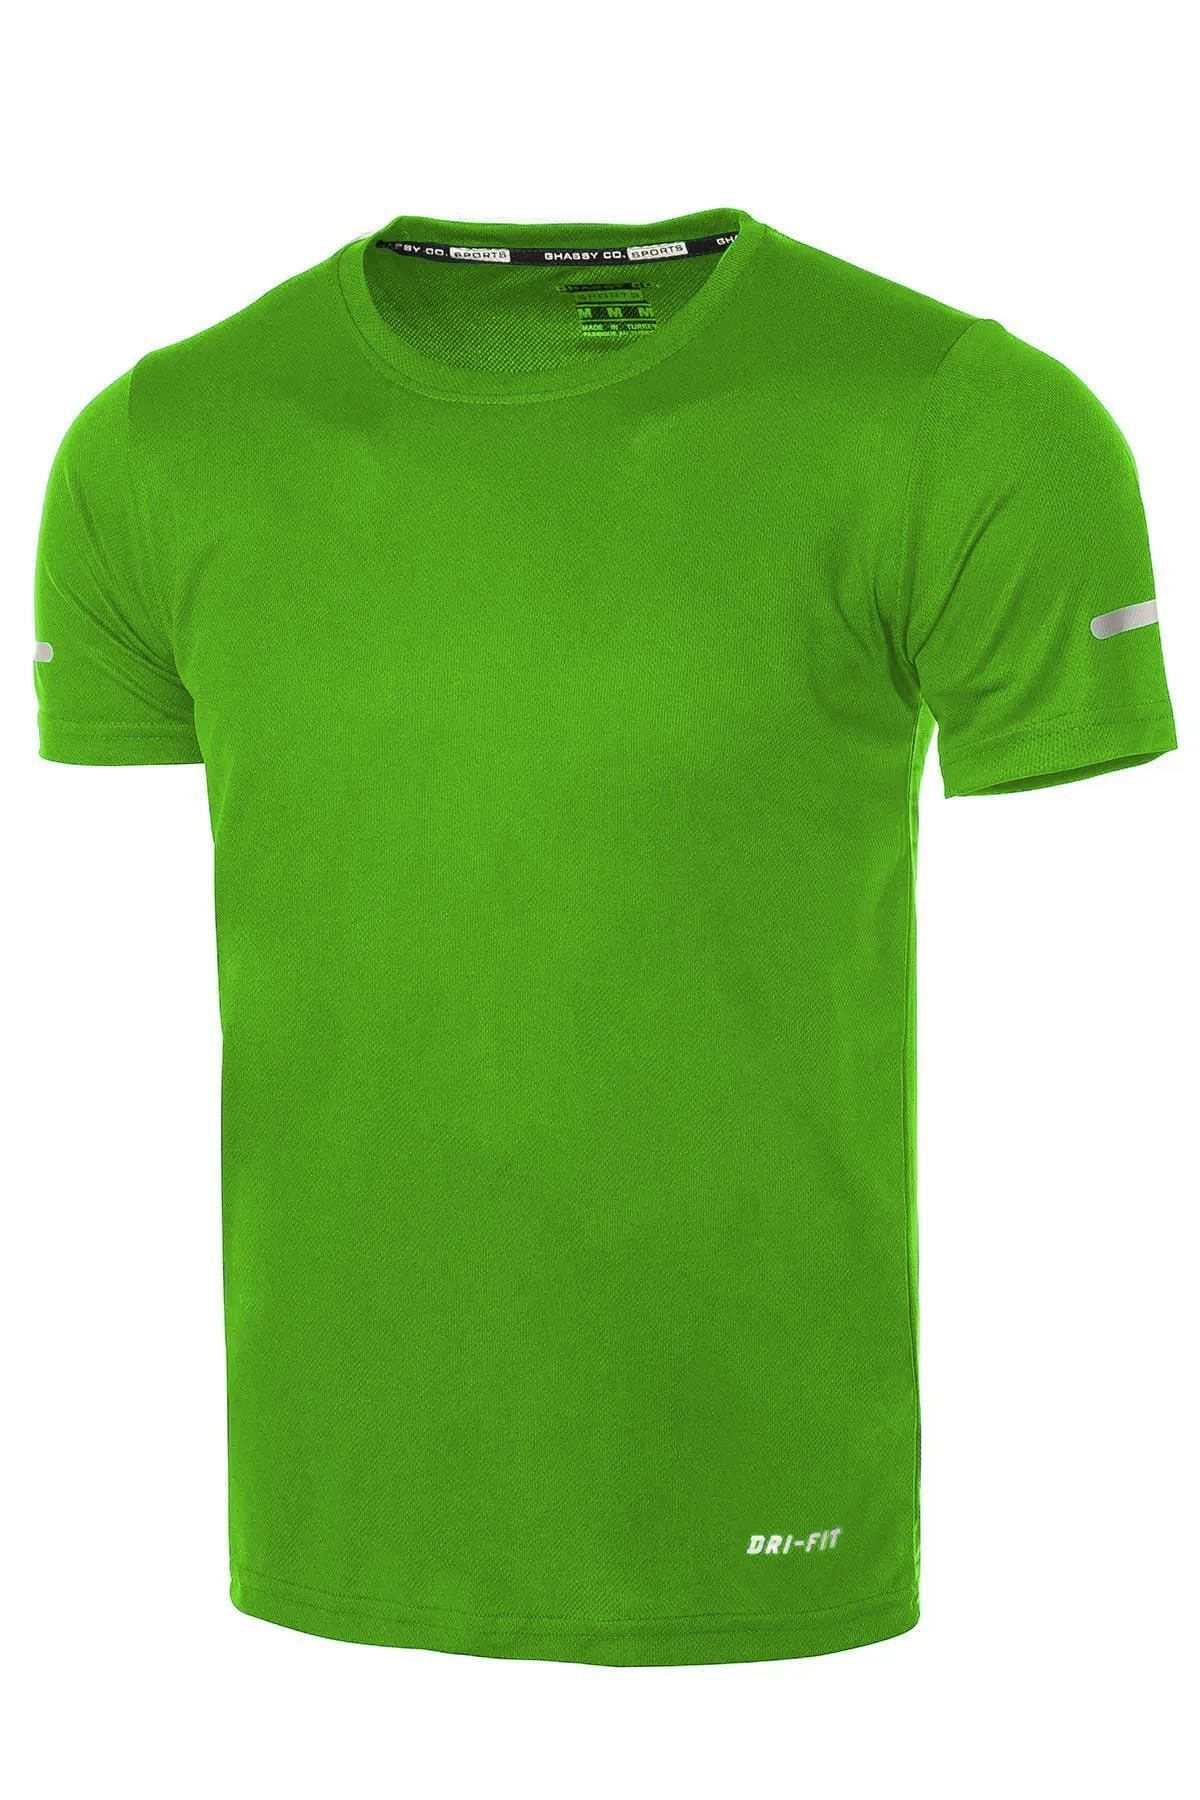 Ghassy Co Ghassy Co. Erkek Nem Emici Hızlı Kuruma Atletik Teknik Performans Spor T-shirt